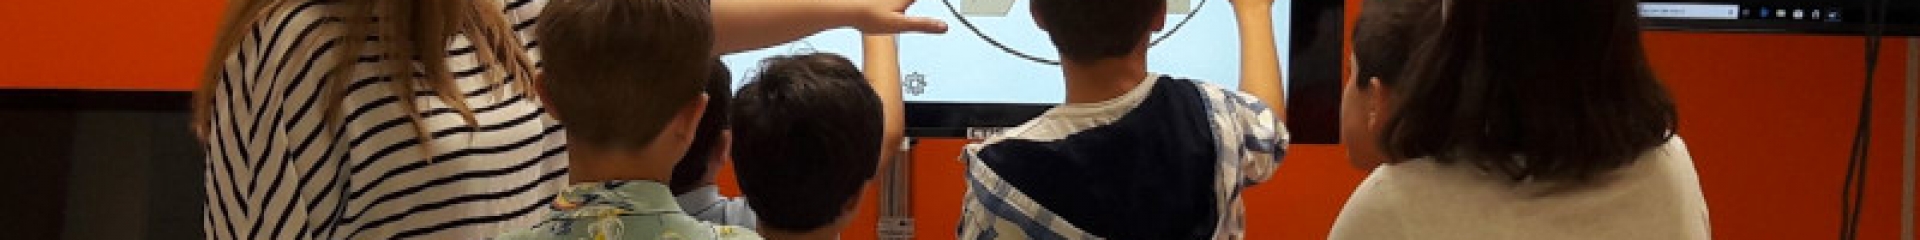 Niños jugando con una pantalla